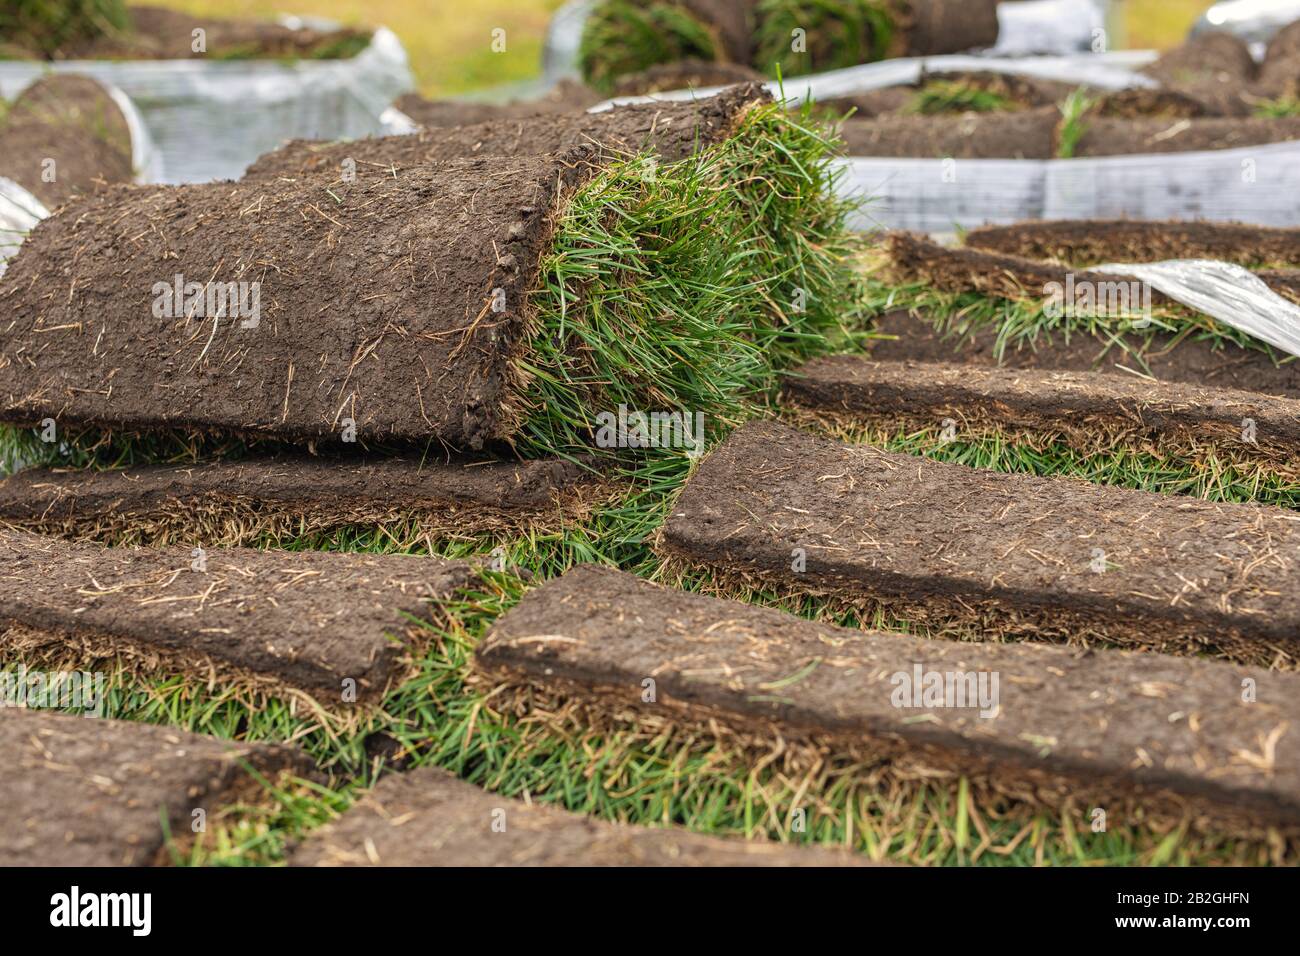 Turf rotolo di erba, erba verde tappeto in rotolo per prato. Pila di tappeto erboso rotoli di erba per la sistemazione paesaggistica. Foto Stock